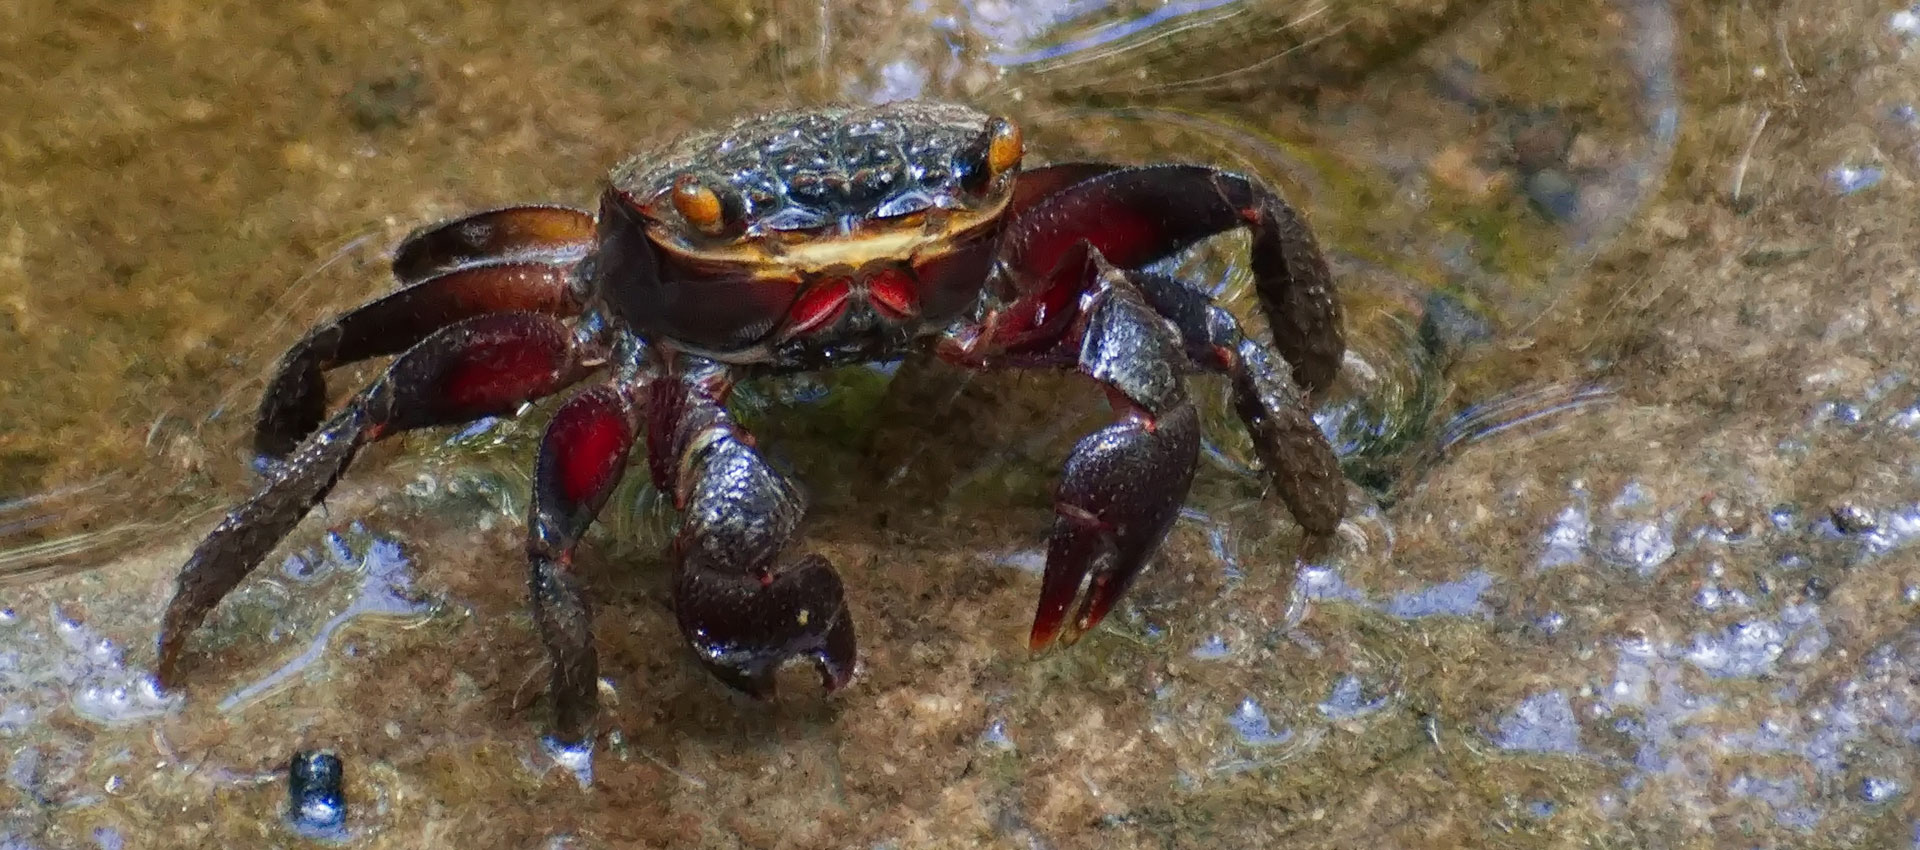 an Australian red mangrove crab